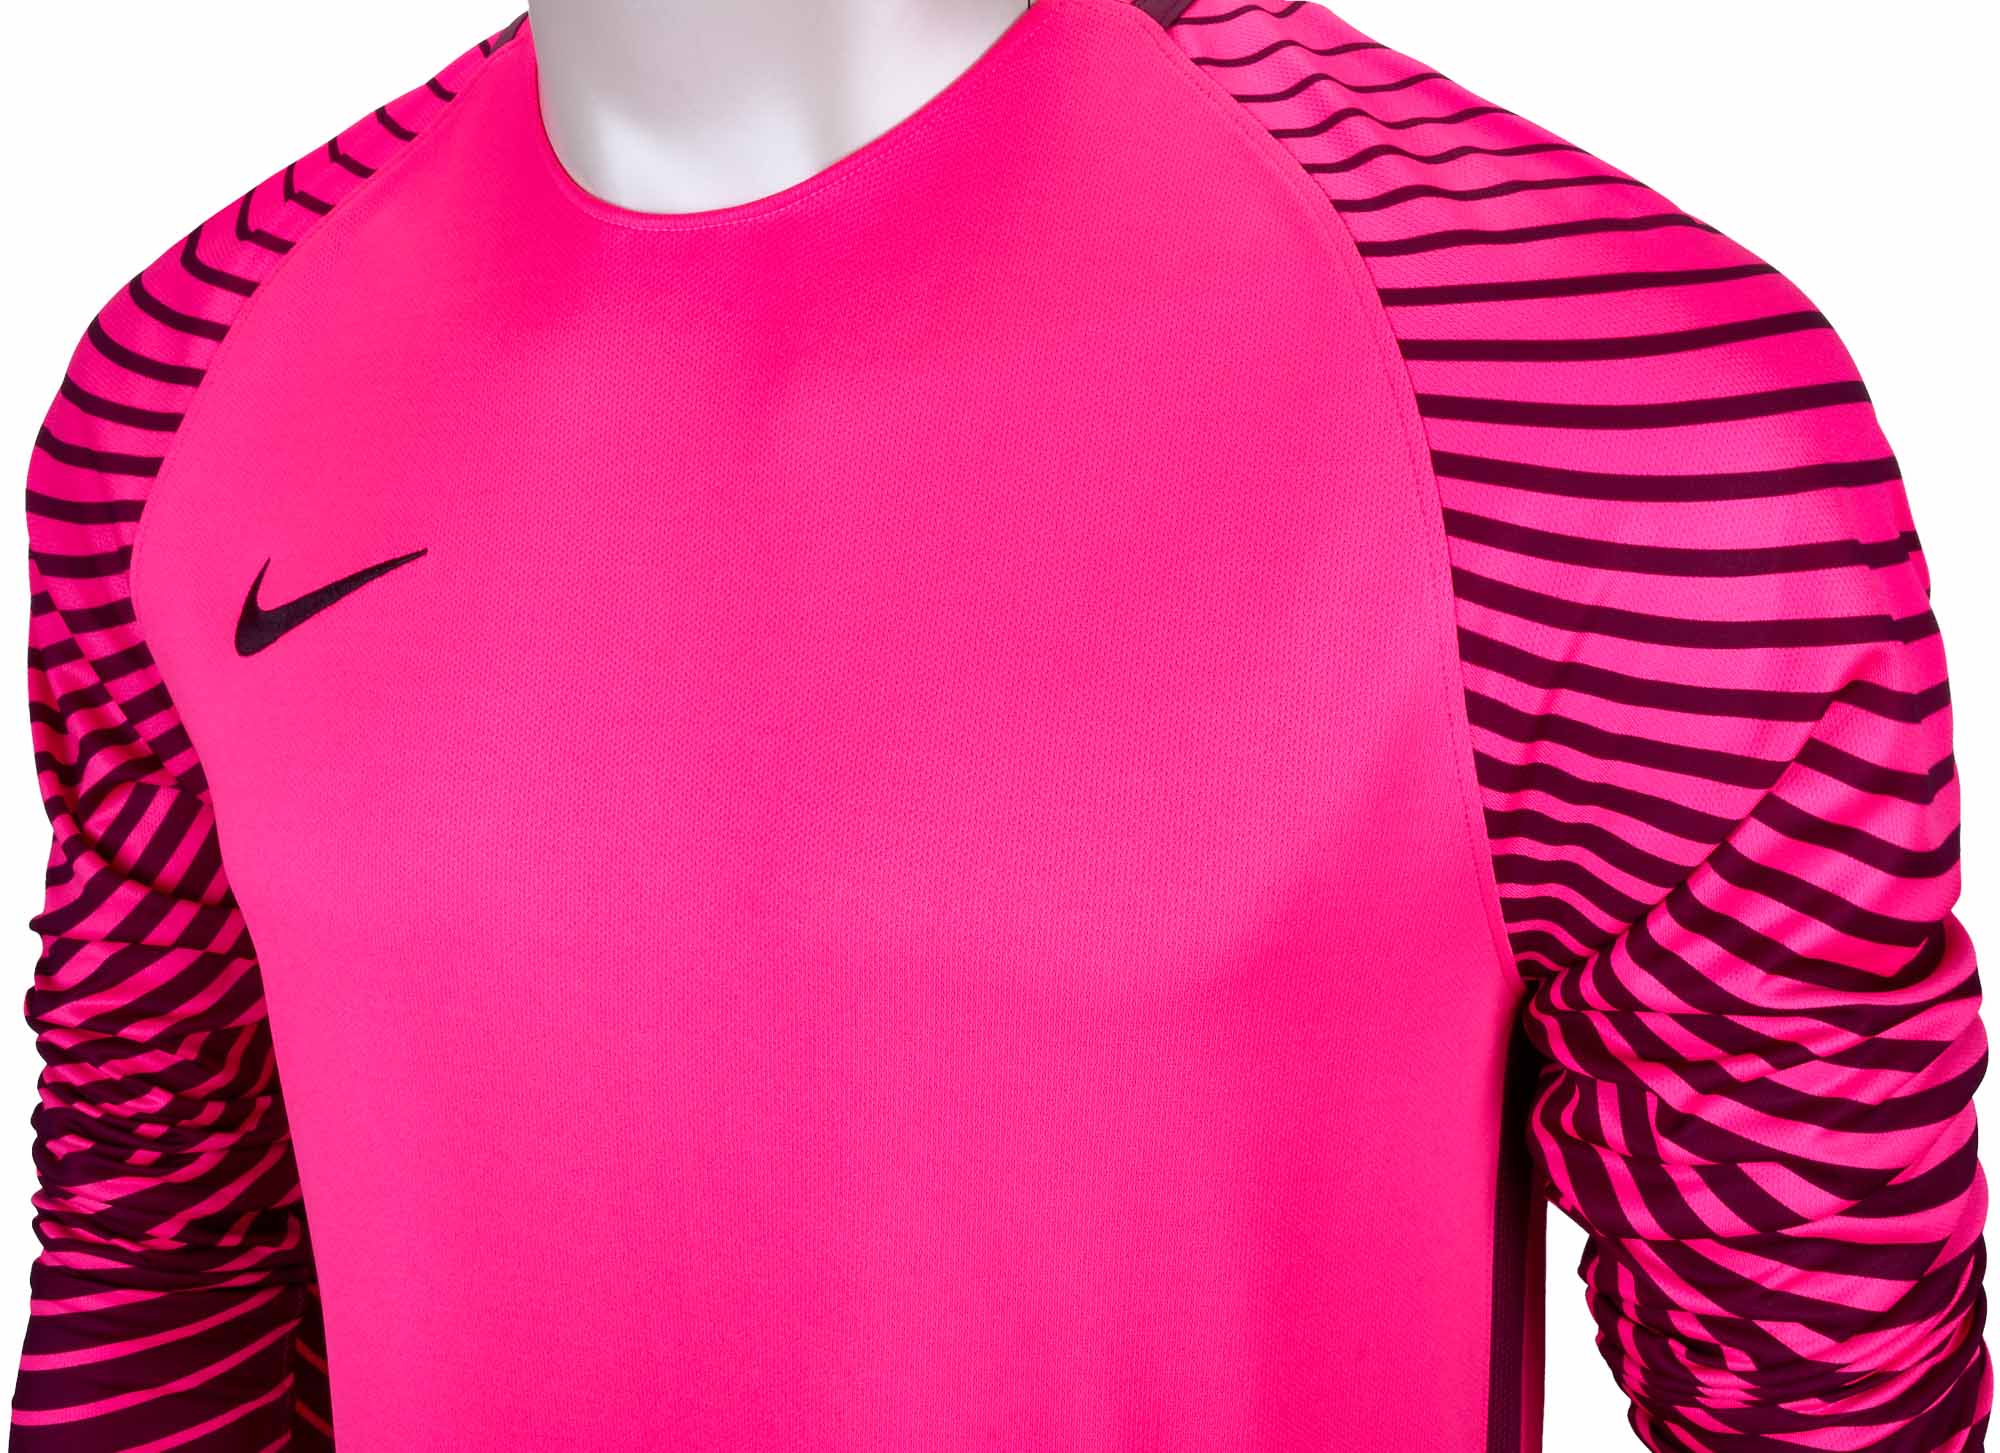 Jersey Futsal Nike Pink - Jersey Terlengkap